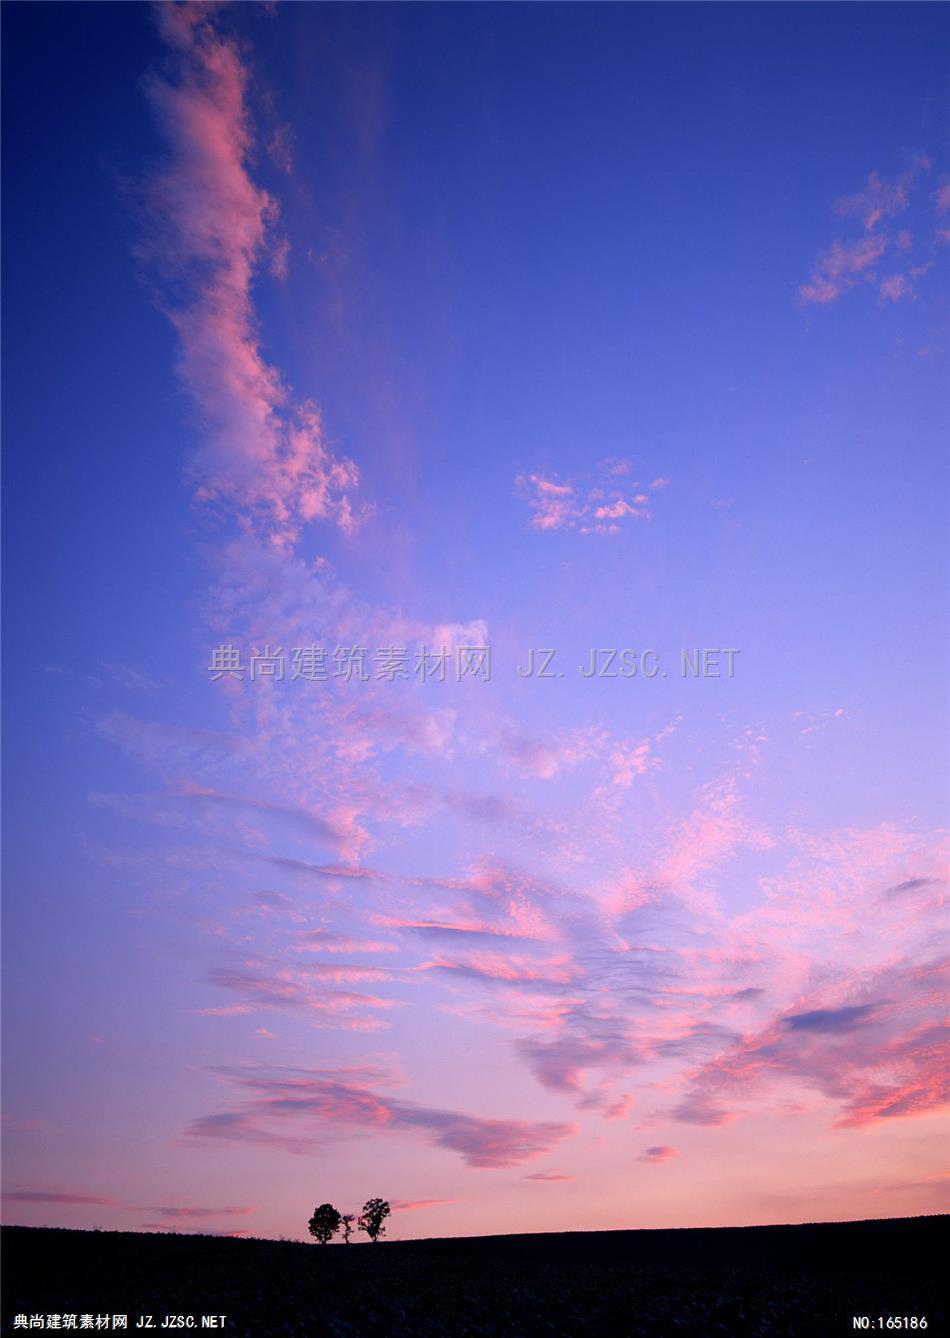 高清夕阳晚霞天空素材A (85) 天空配景精美天空